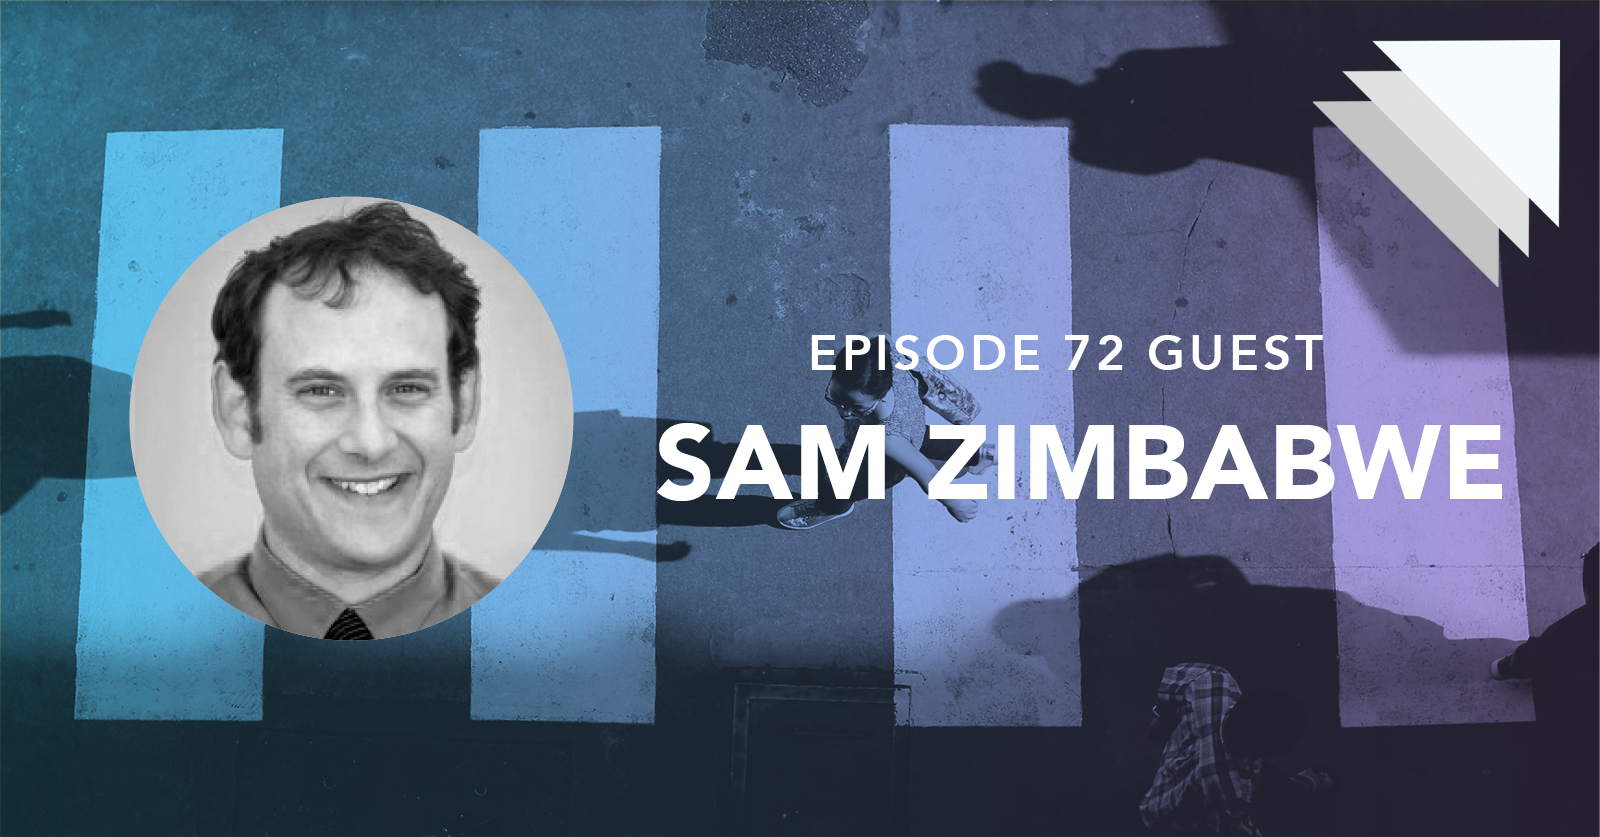 Episode 72 guest Sam Zimbabwe